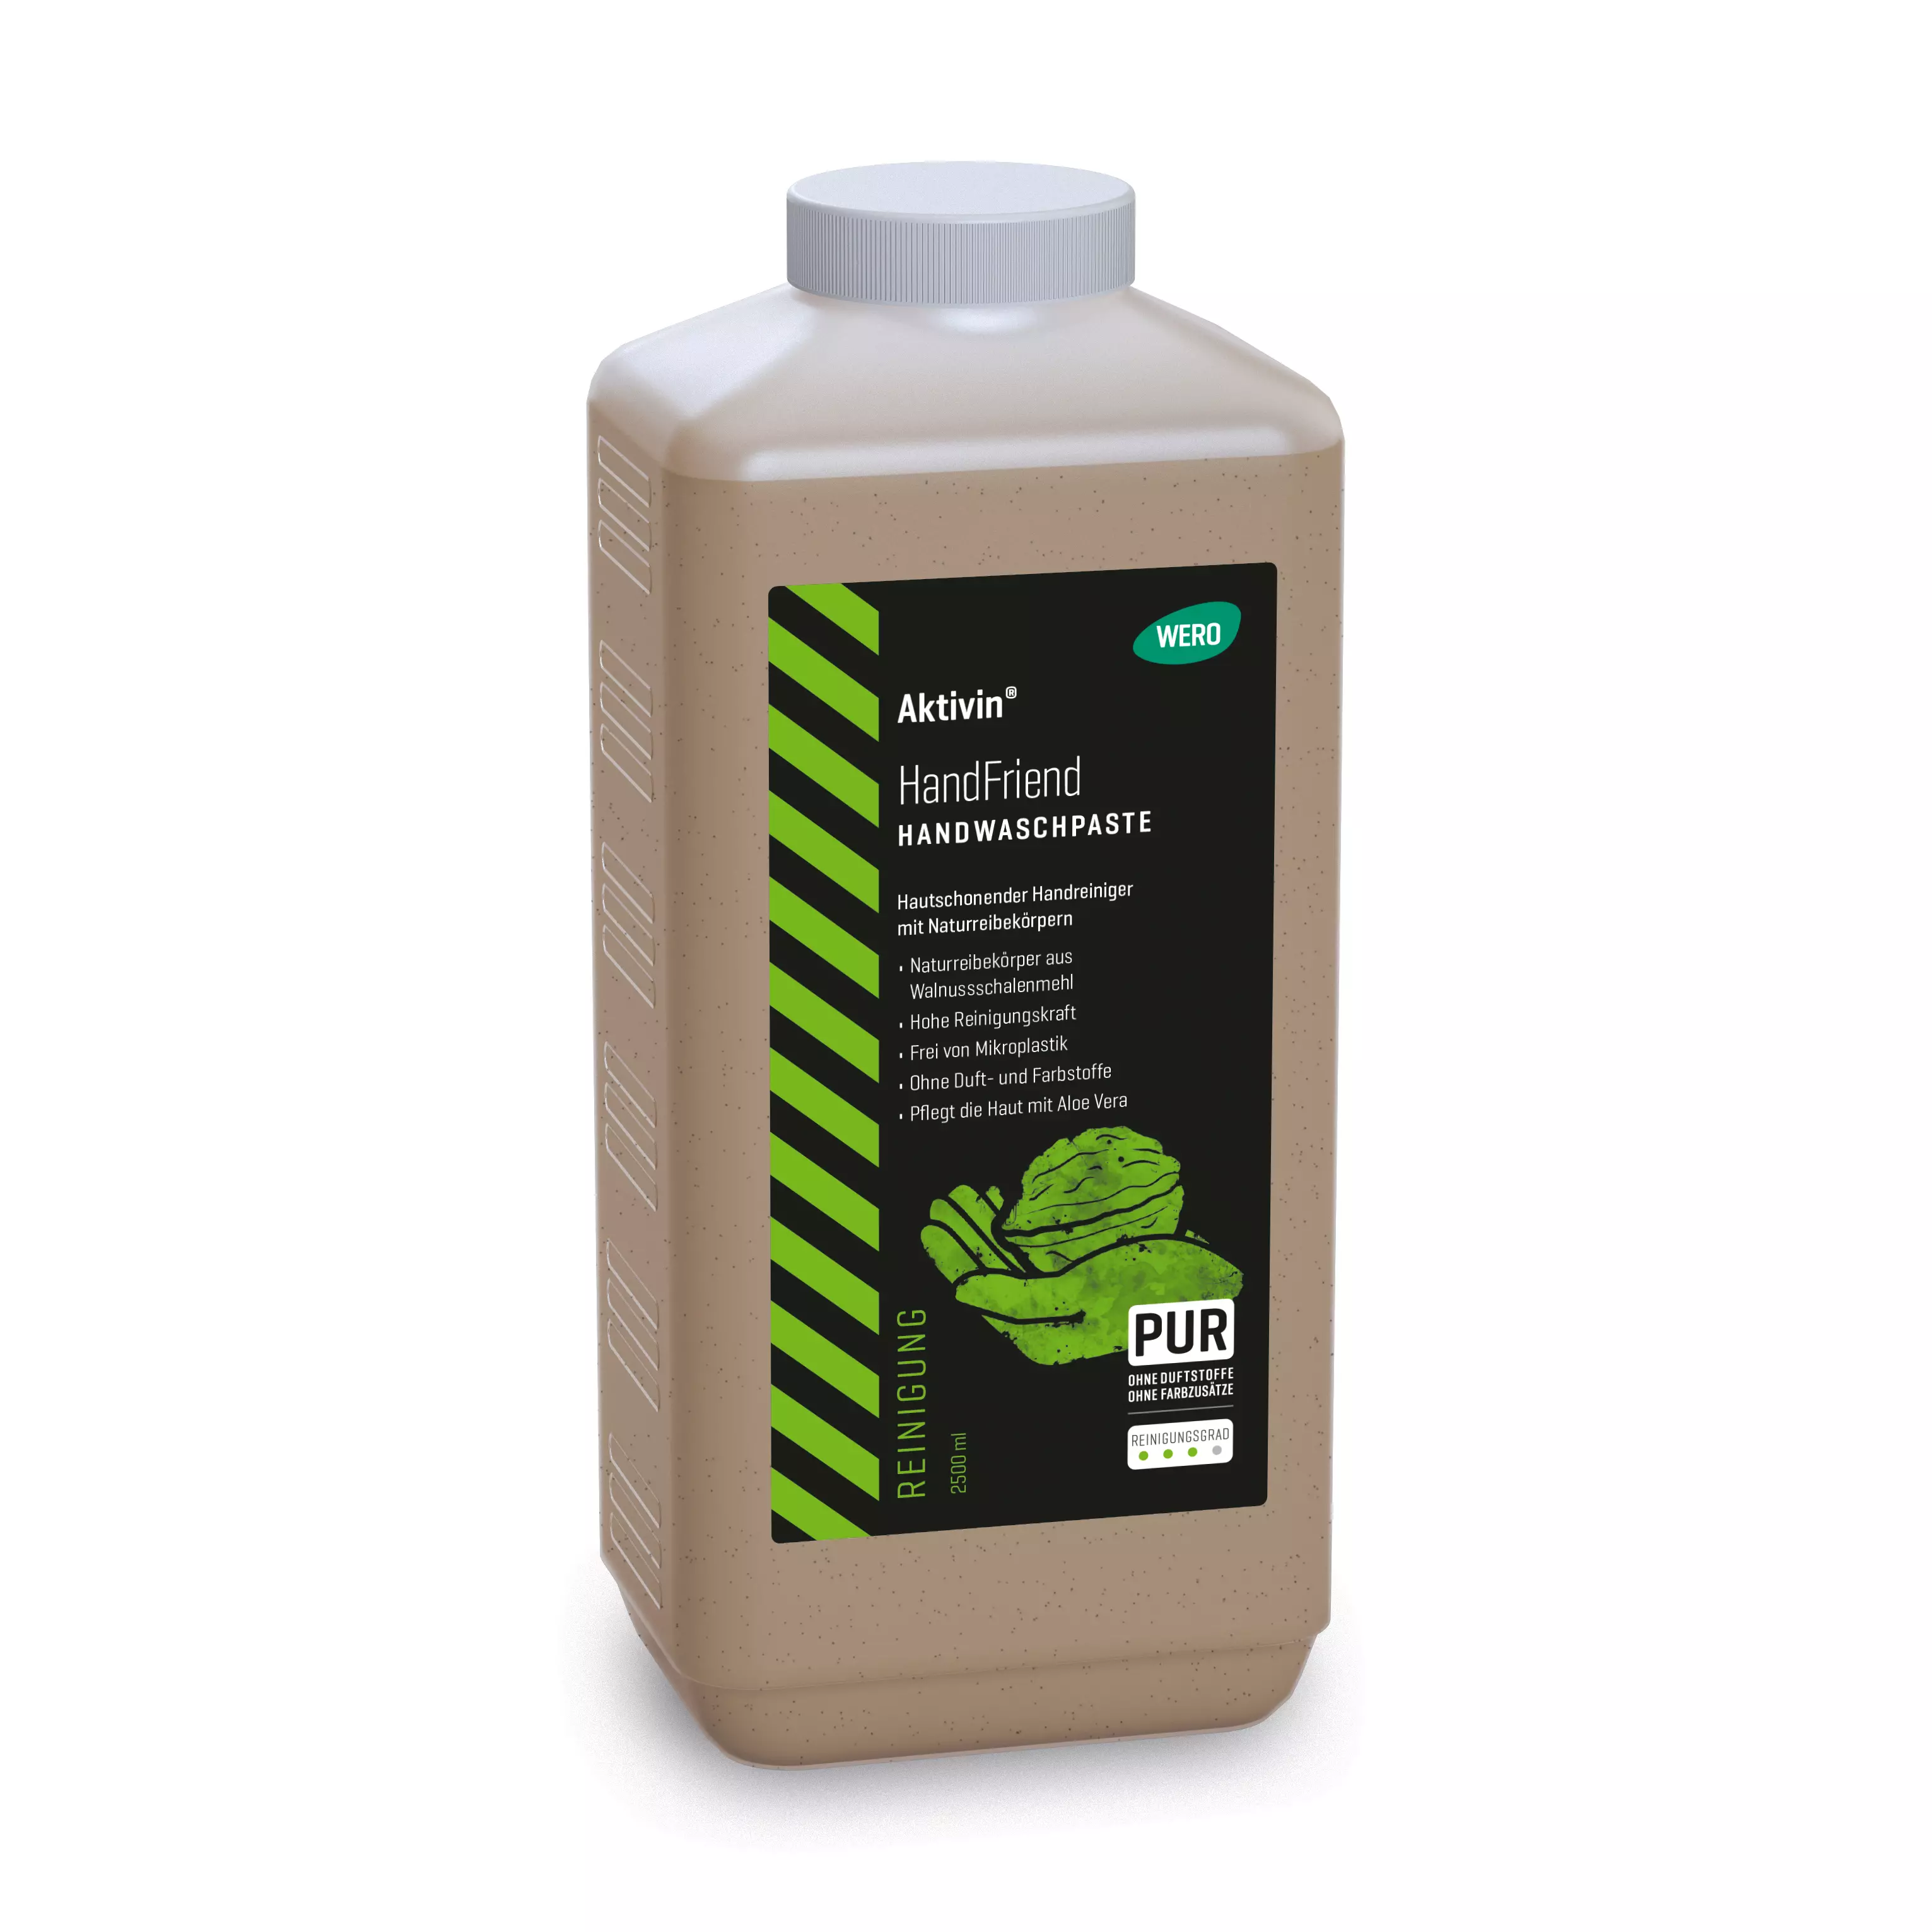 Handwaschpaste Aktivin® HandFriend - Euroflasche, 2.500 ml